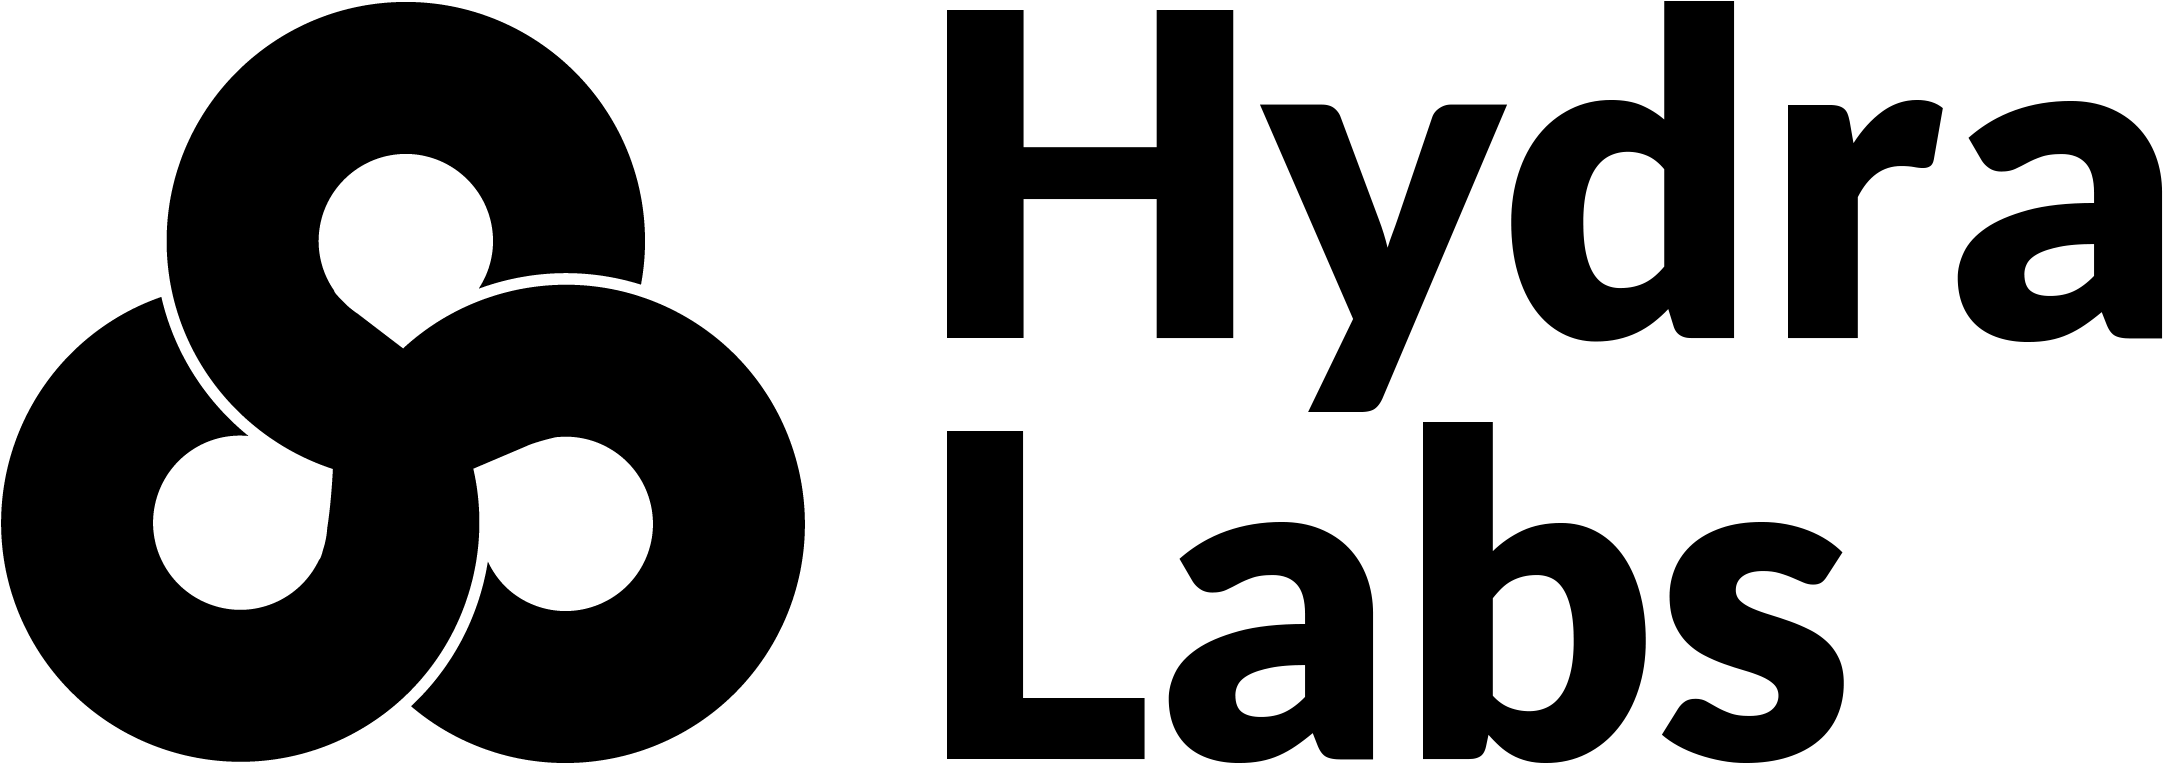 Marvel Hydra logo PNG Imagen de alta calidad